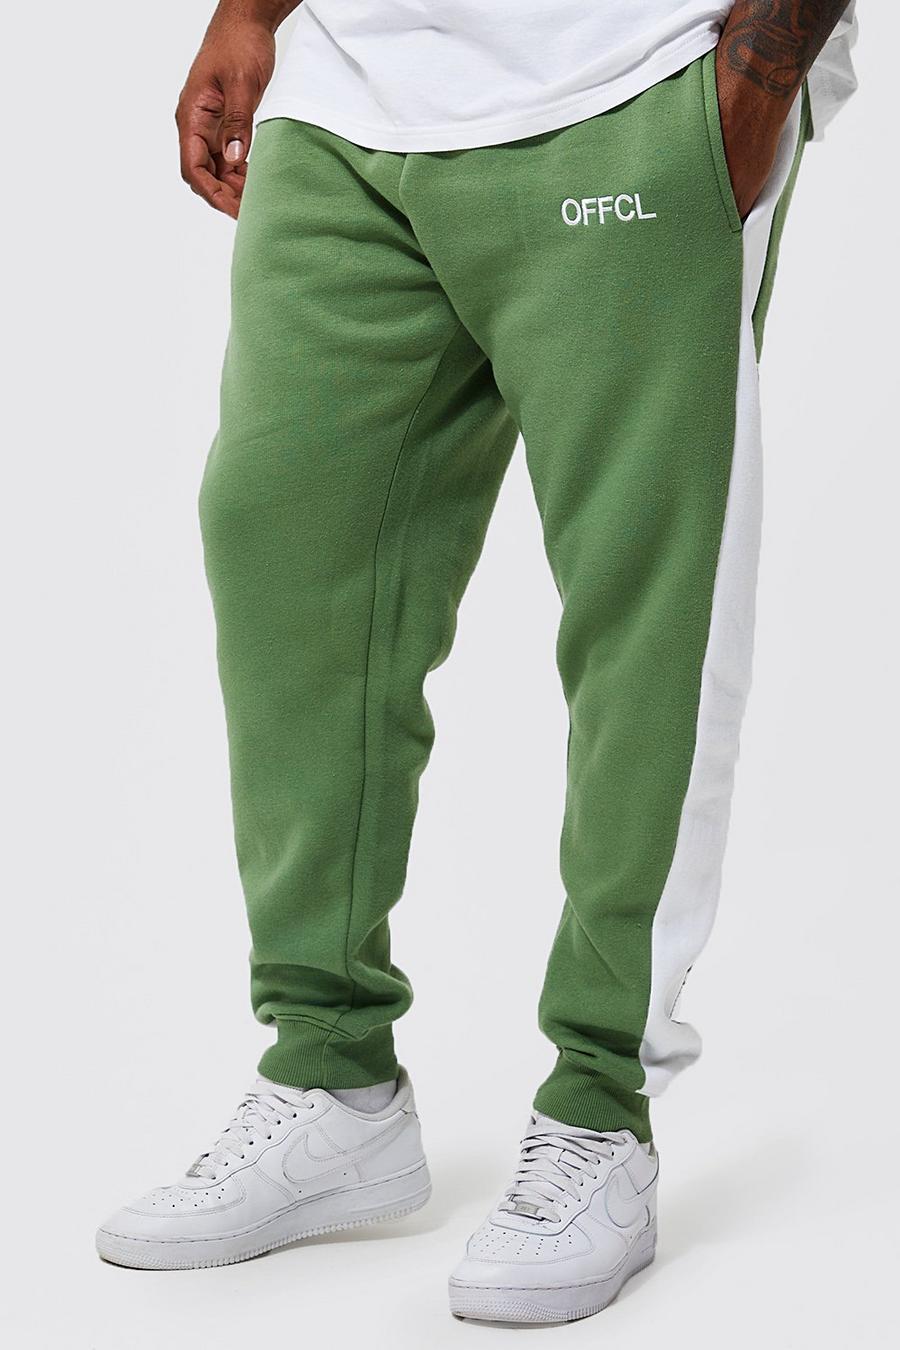 Pantalón deportivo Plus Offcl pitillo con panel lateral, Sage gerde